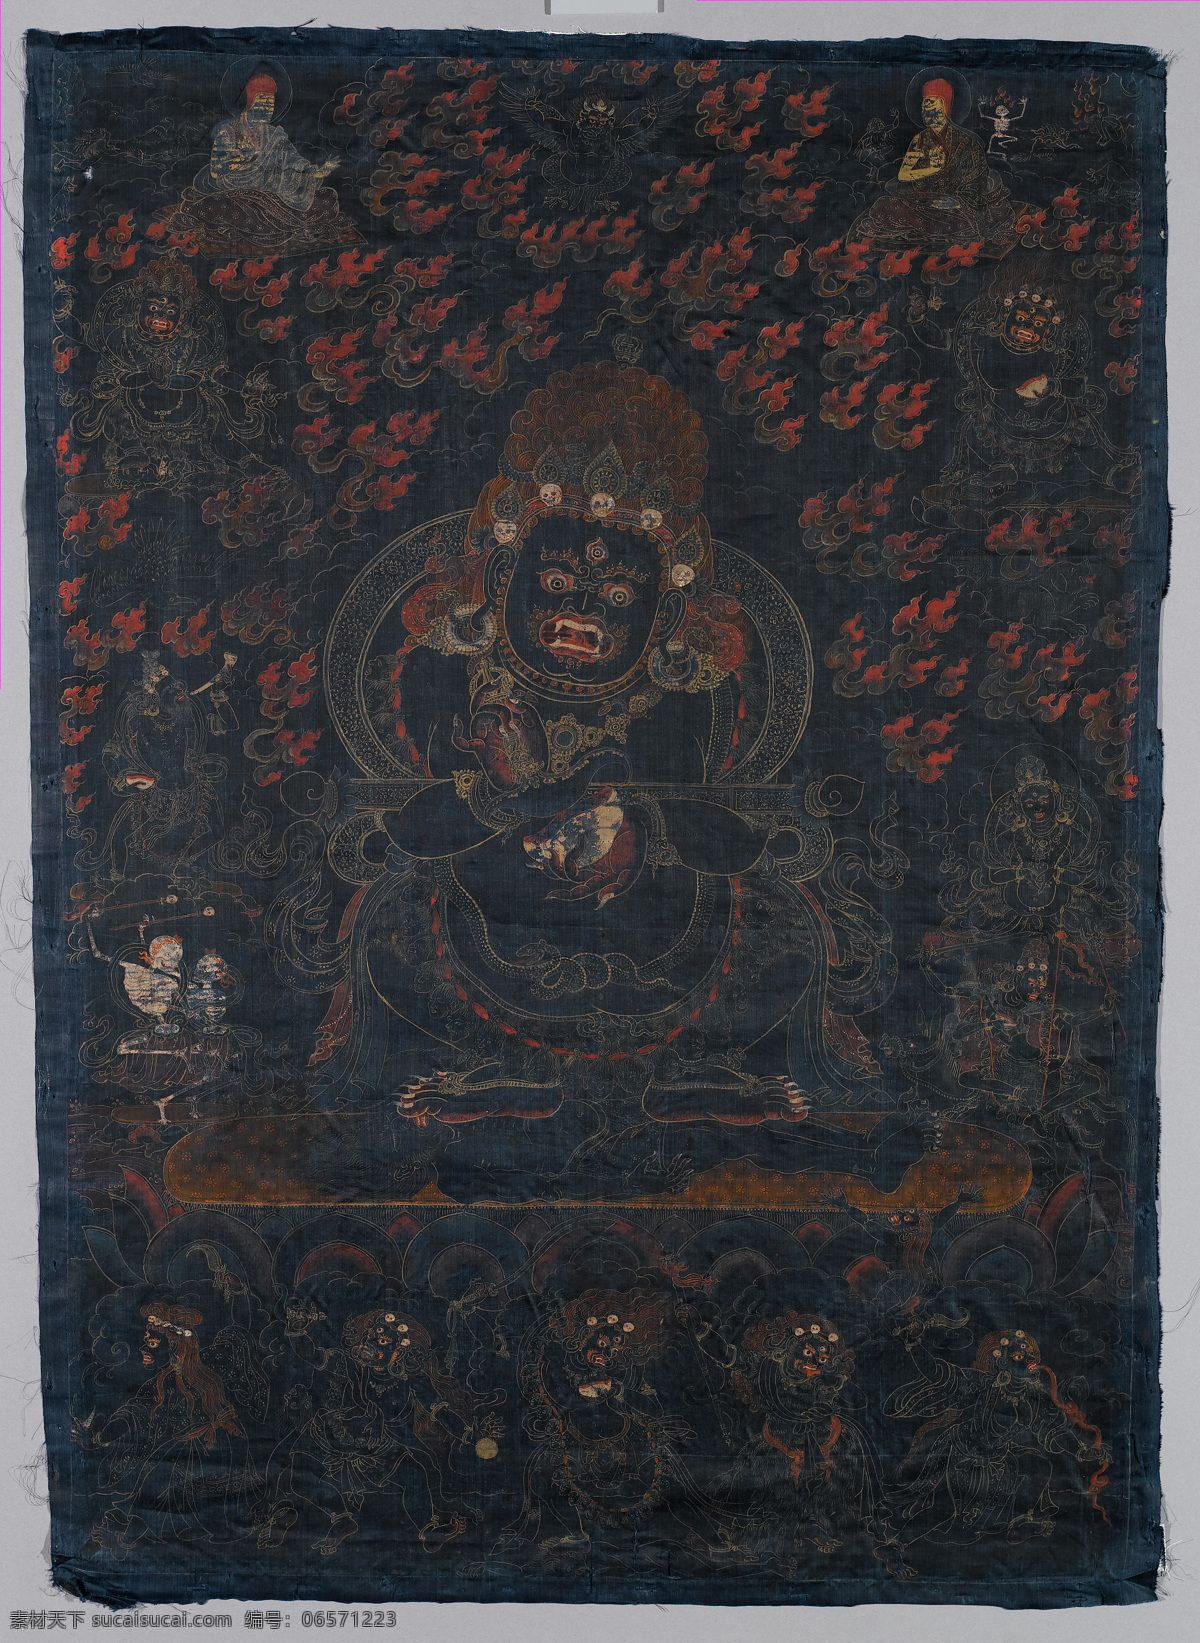 玛哈嘎拉 宝帐怙主 二臂大黑天 萨迦派 钺刀 骷髅碗 禅杖 密宗 西藏 佛 佛教 宗教信仰 文化艺术